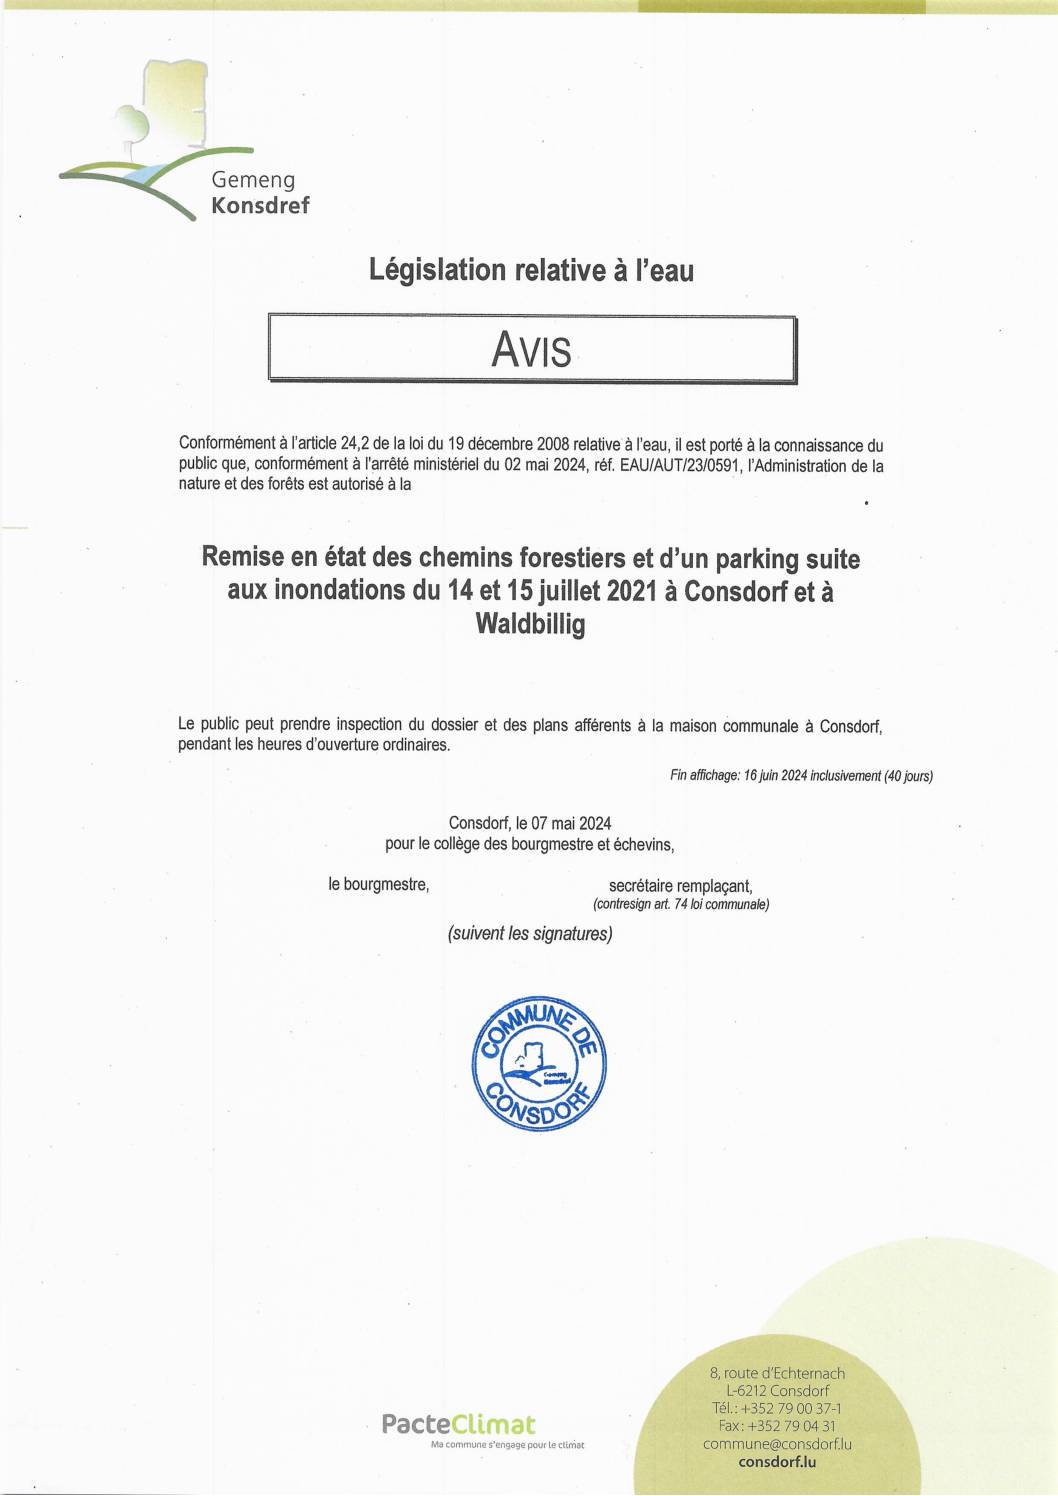 EAU2024-05-02 - avis autorisation - Consdorf - Remise en état des chemins forestiers et d’un parking suite inondations du 14 et 15 juillet 2021 à Consdorf et à Waldbillig